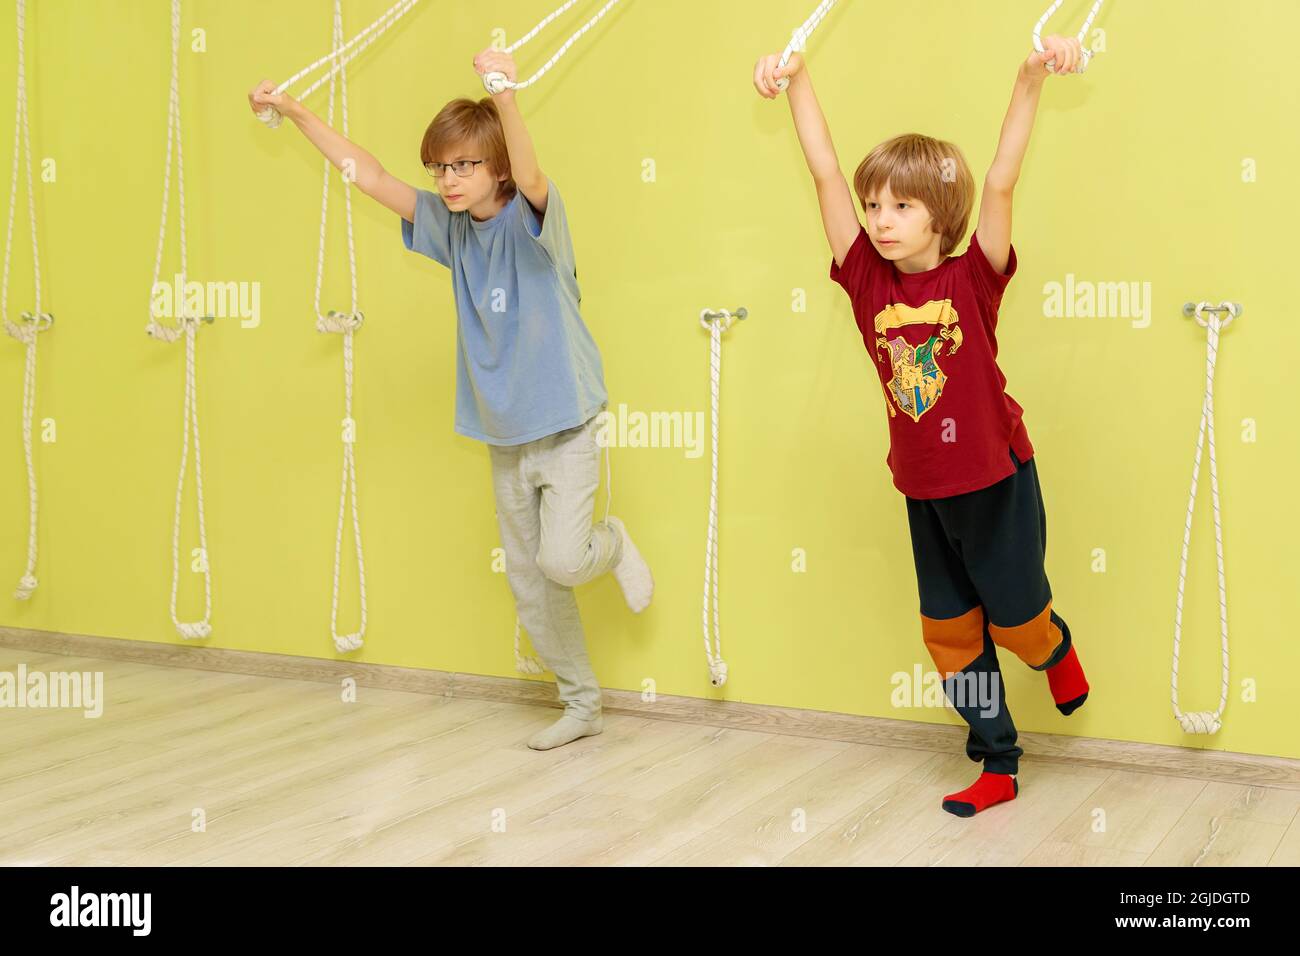 Zwei Jungen machen Übungen an einer gelben Wand mit Seilen. Jungen gehen mit einem Lehrer Sport. Stockfoto